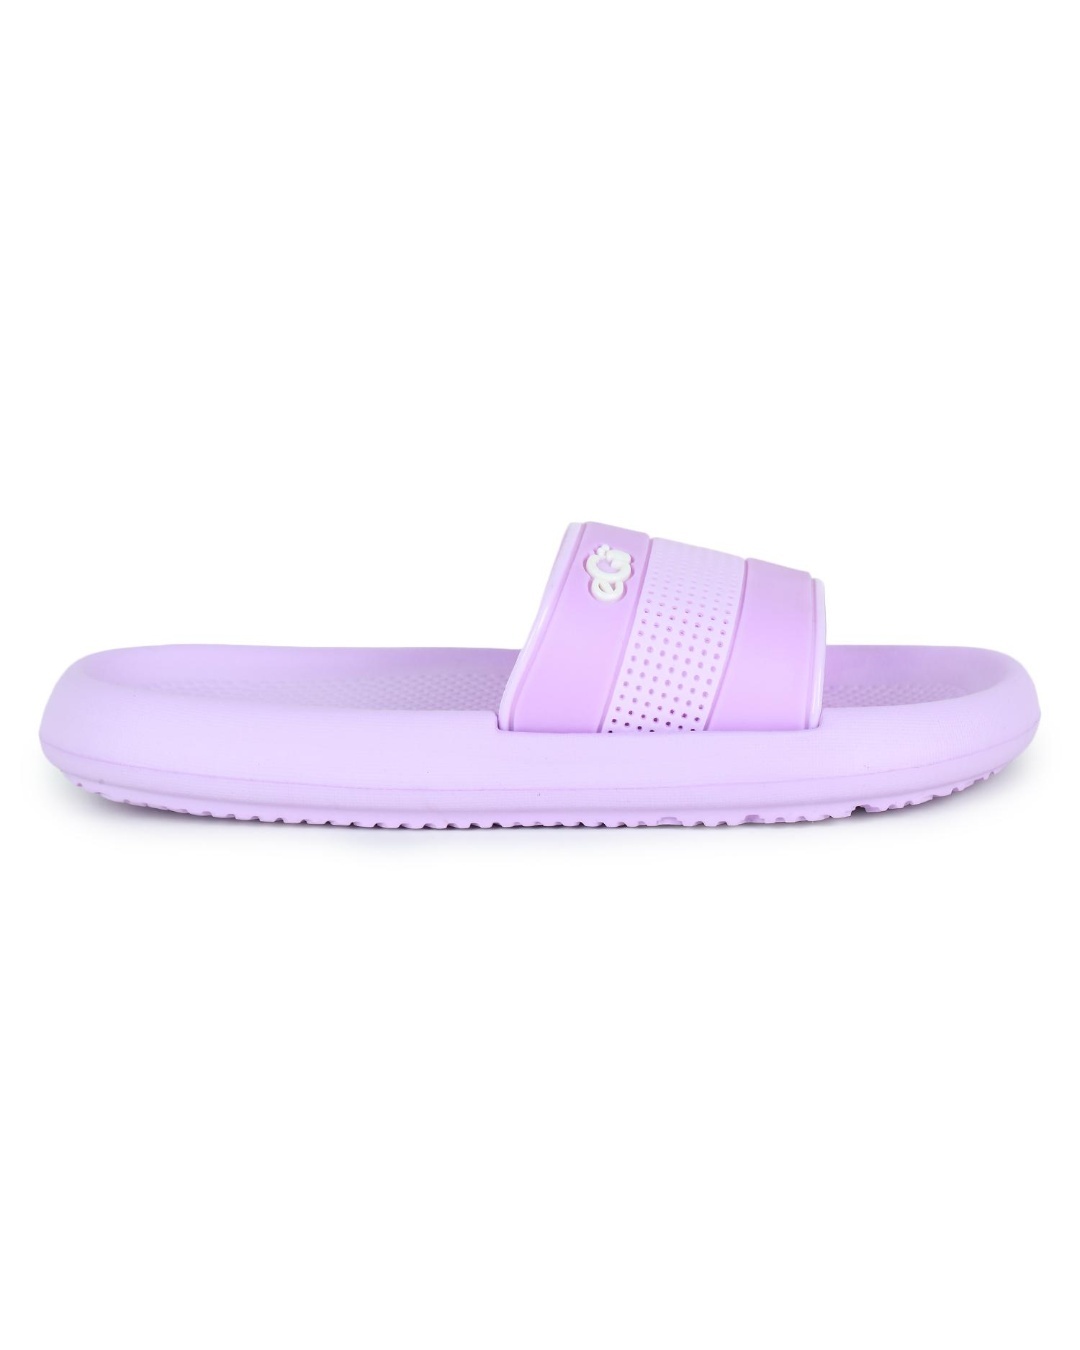 Buy Women's Purple Color Blocked Sliders Online in India at Bewakoof